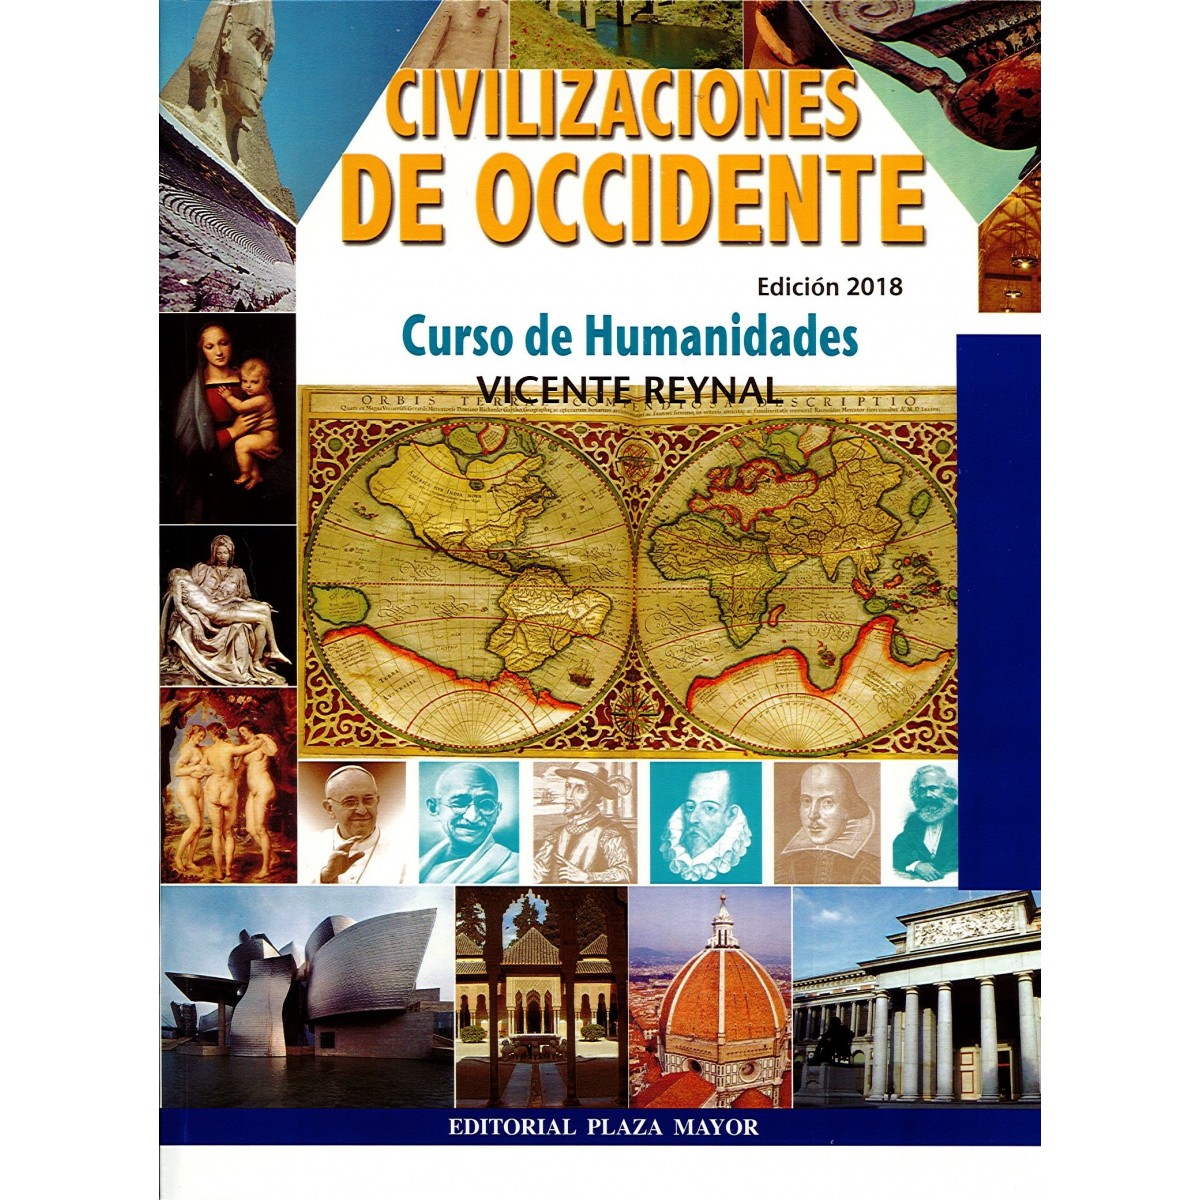 civilizaciones de occidente vicente reynal 2008 pdf download